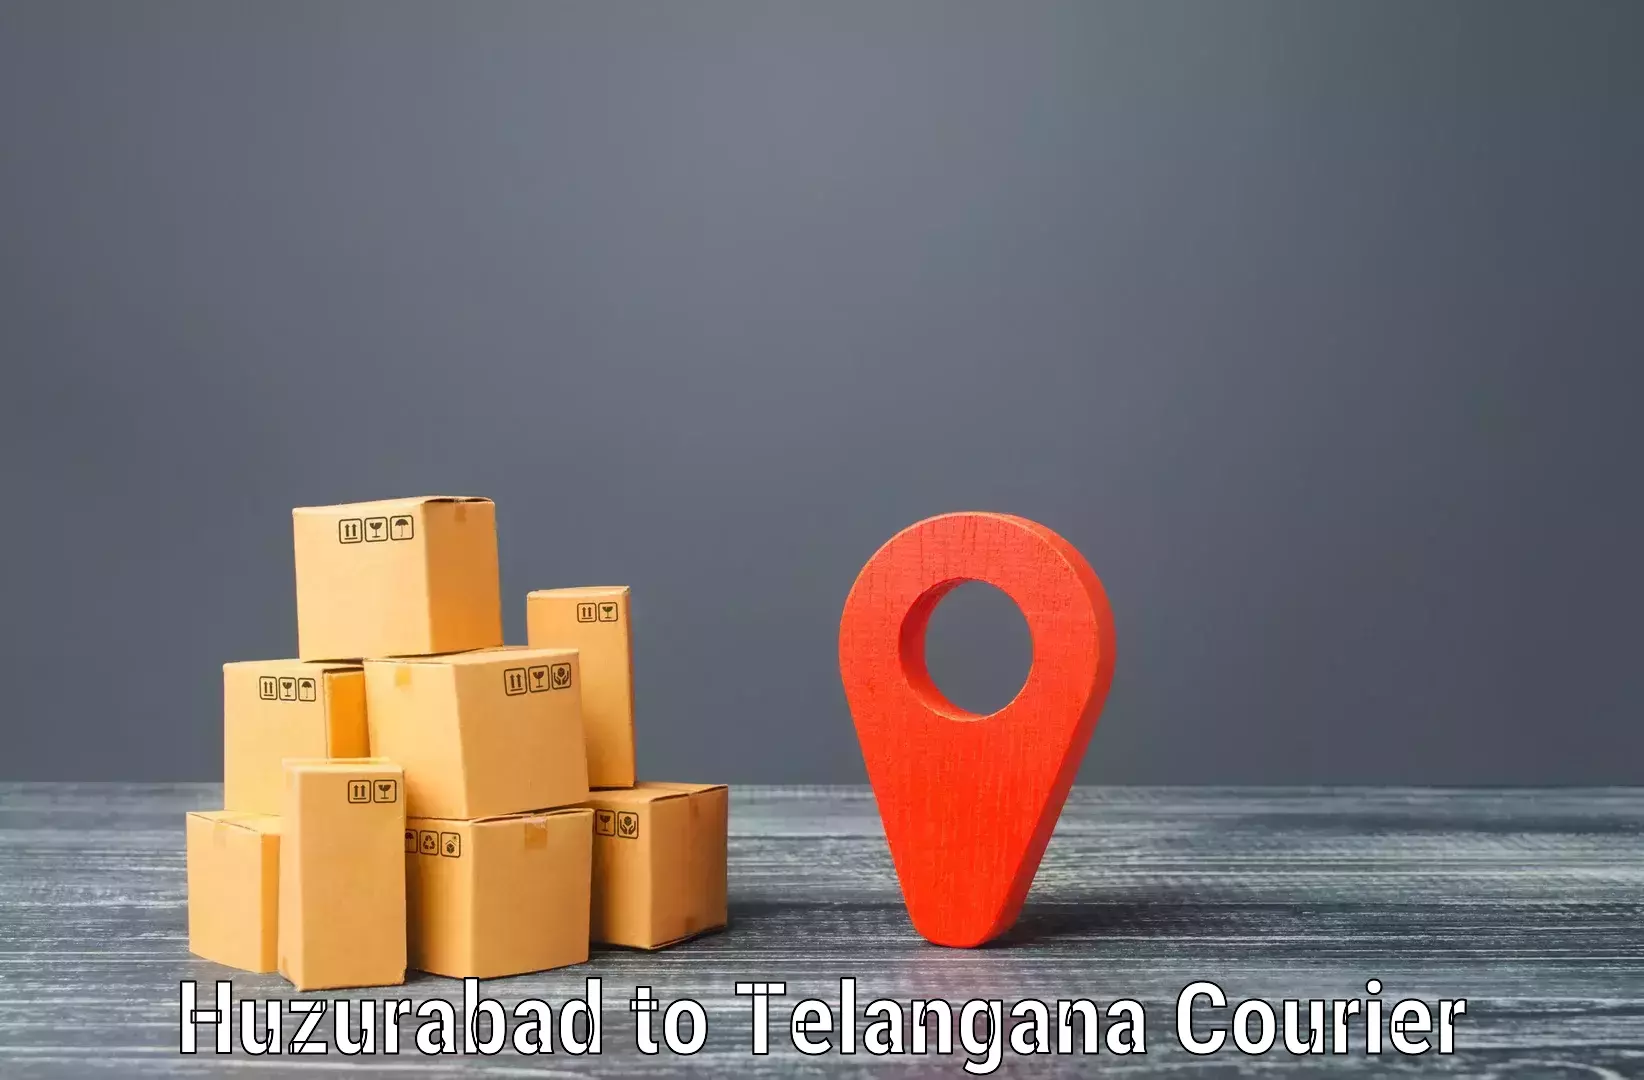 Multi-city courier Huzurabad to Peddapalli